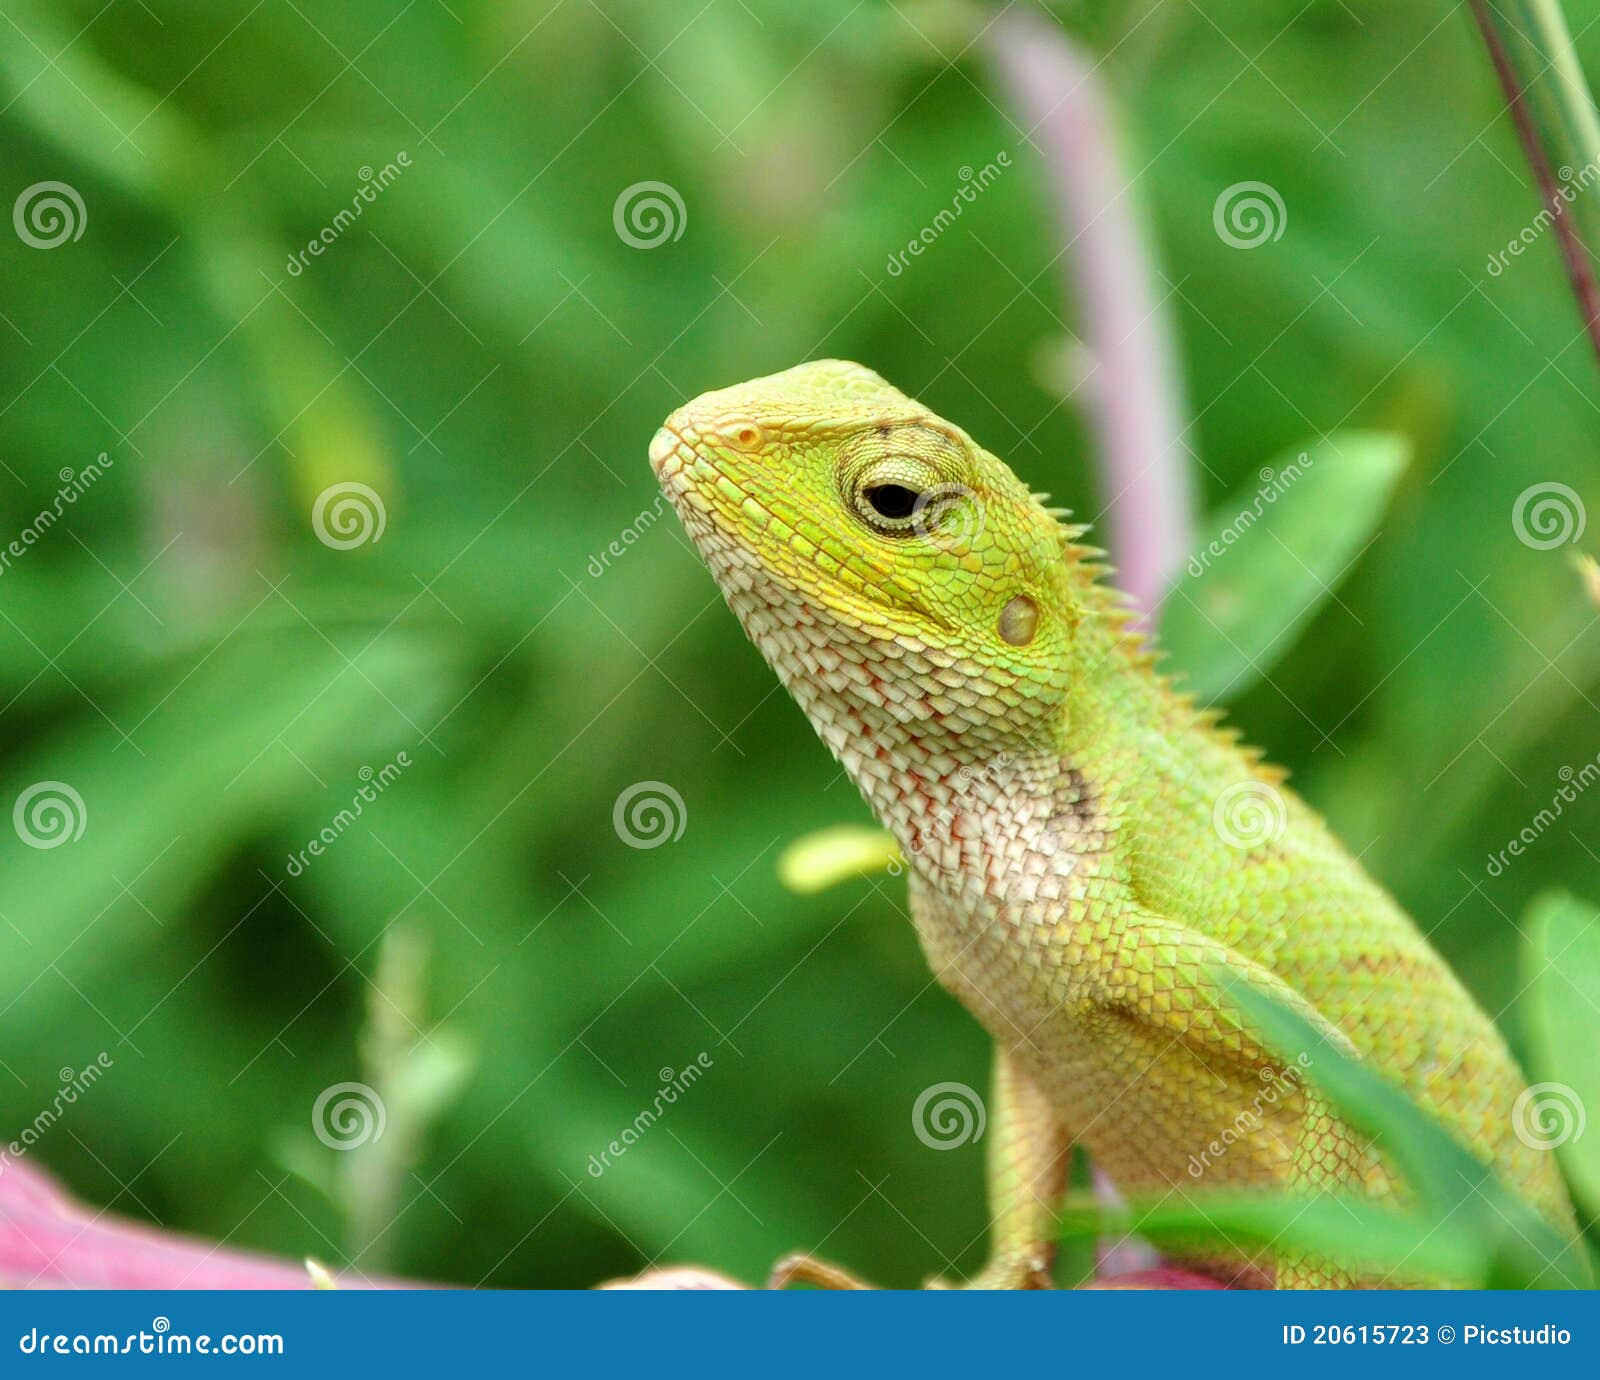 camouflaged garden lizard